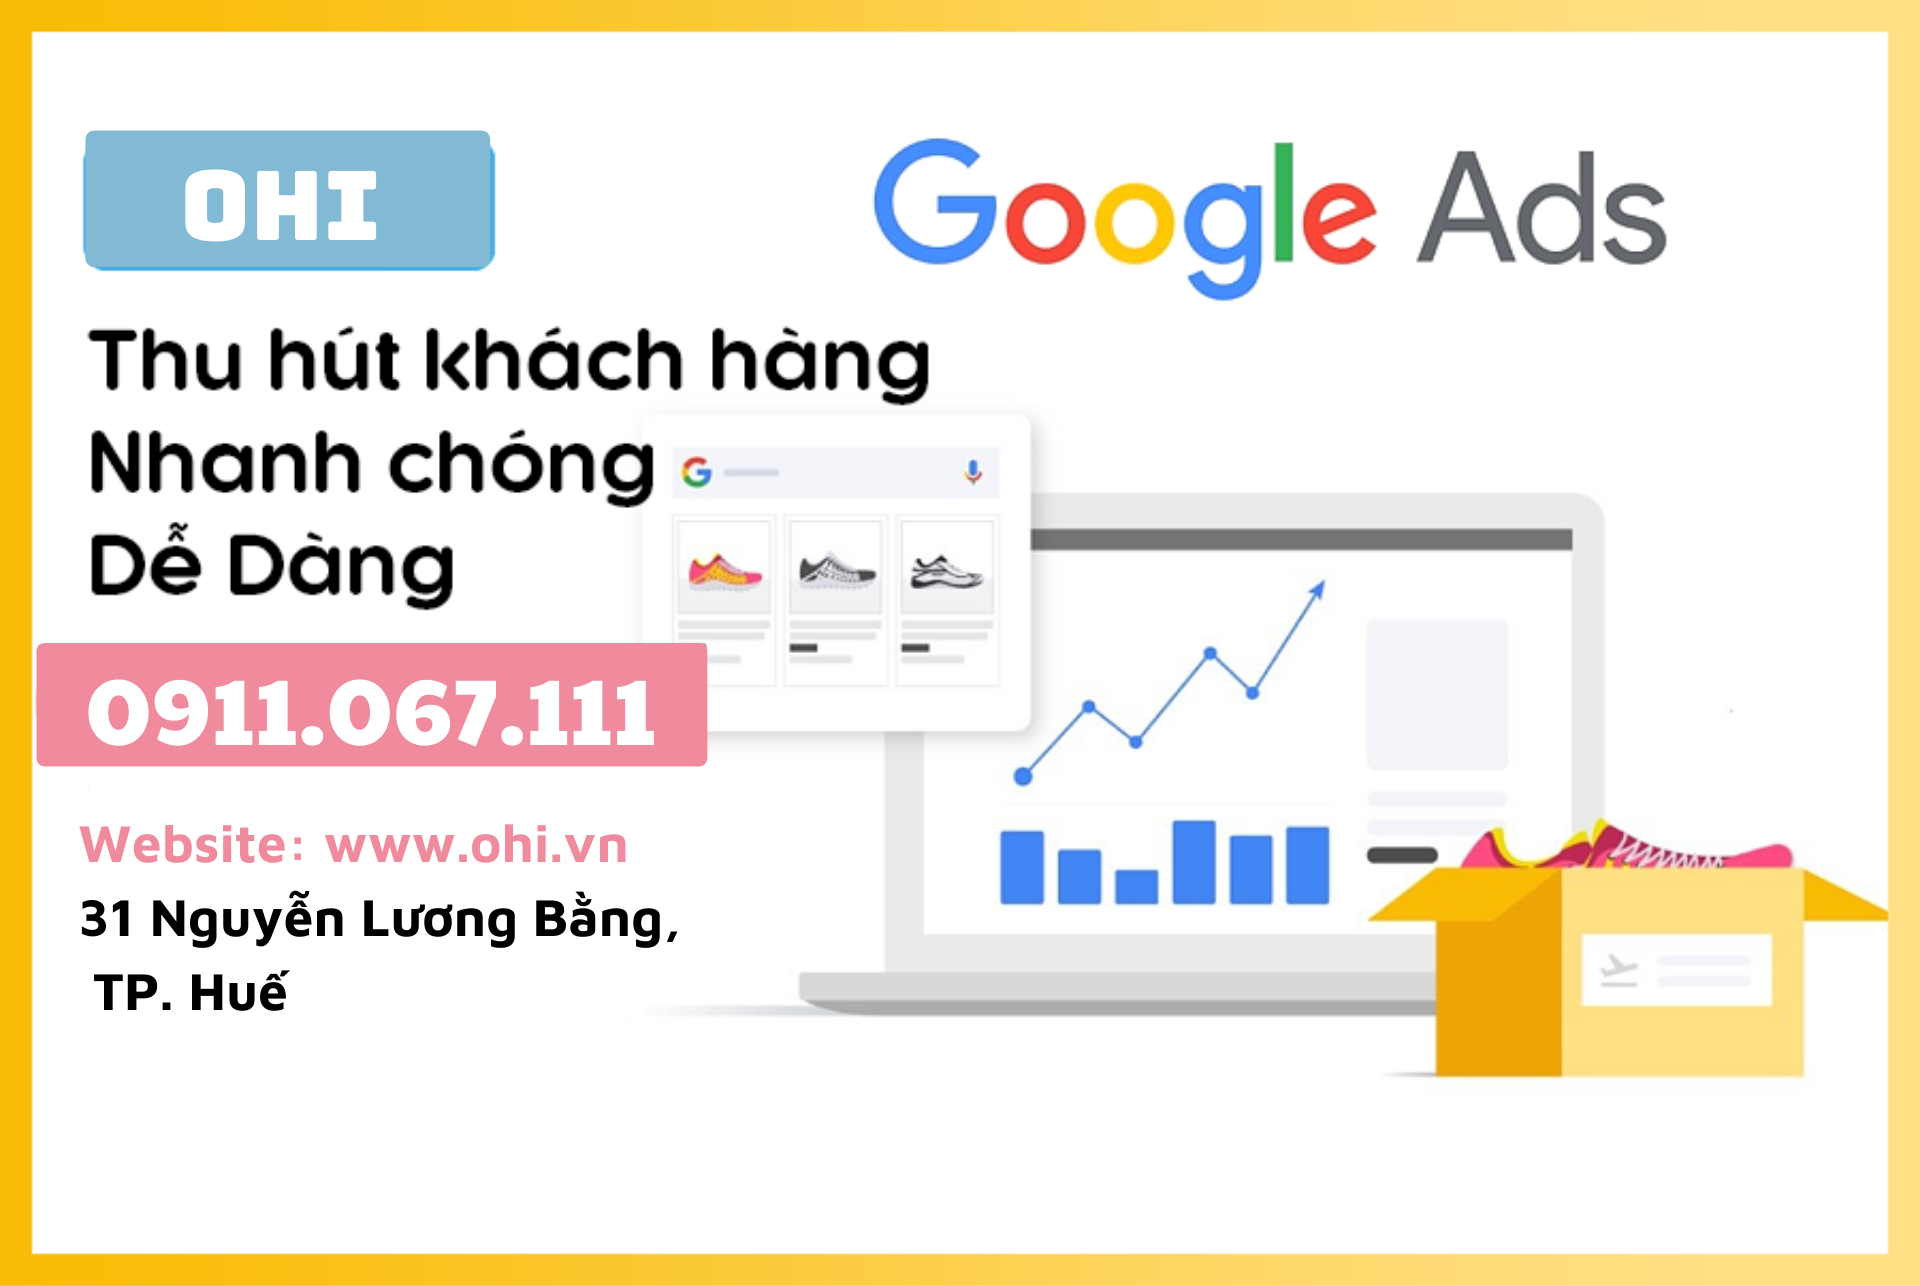 Có nên chạy quảng cáo Google Ads?